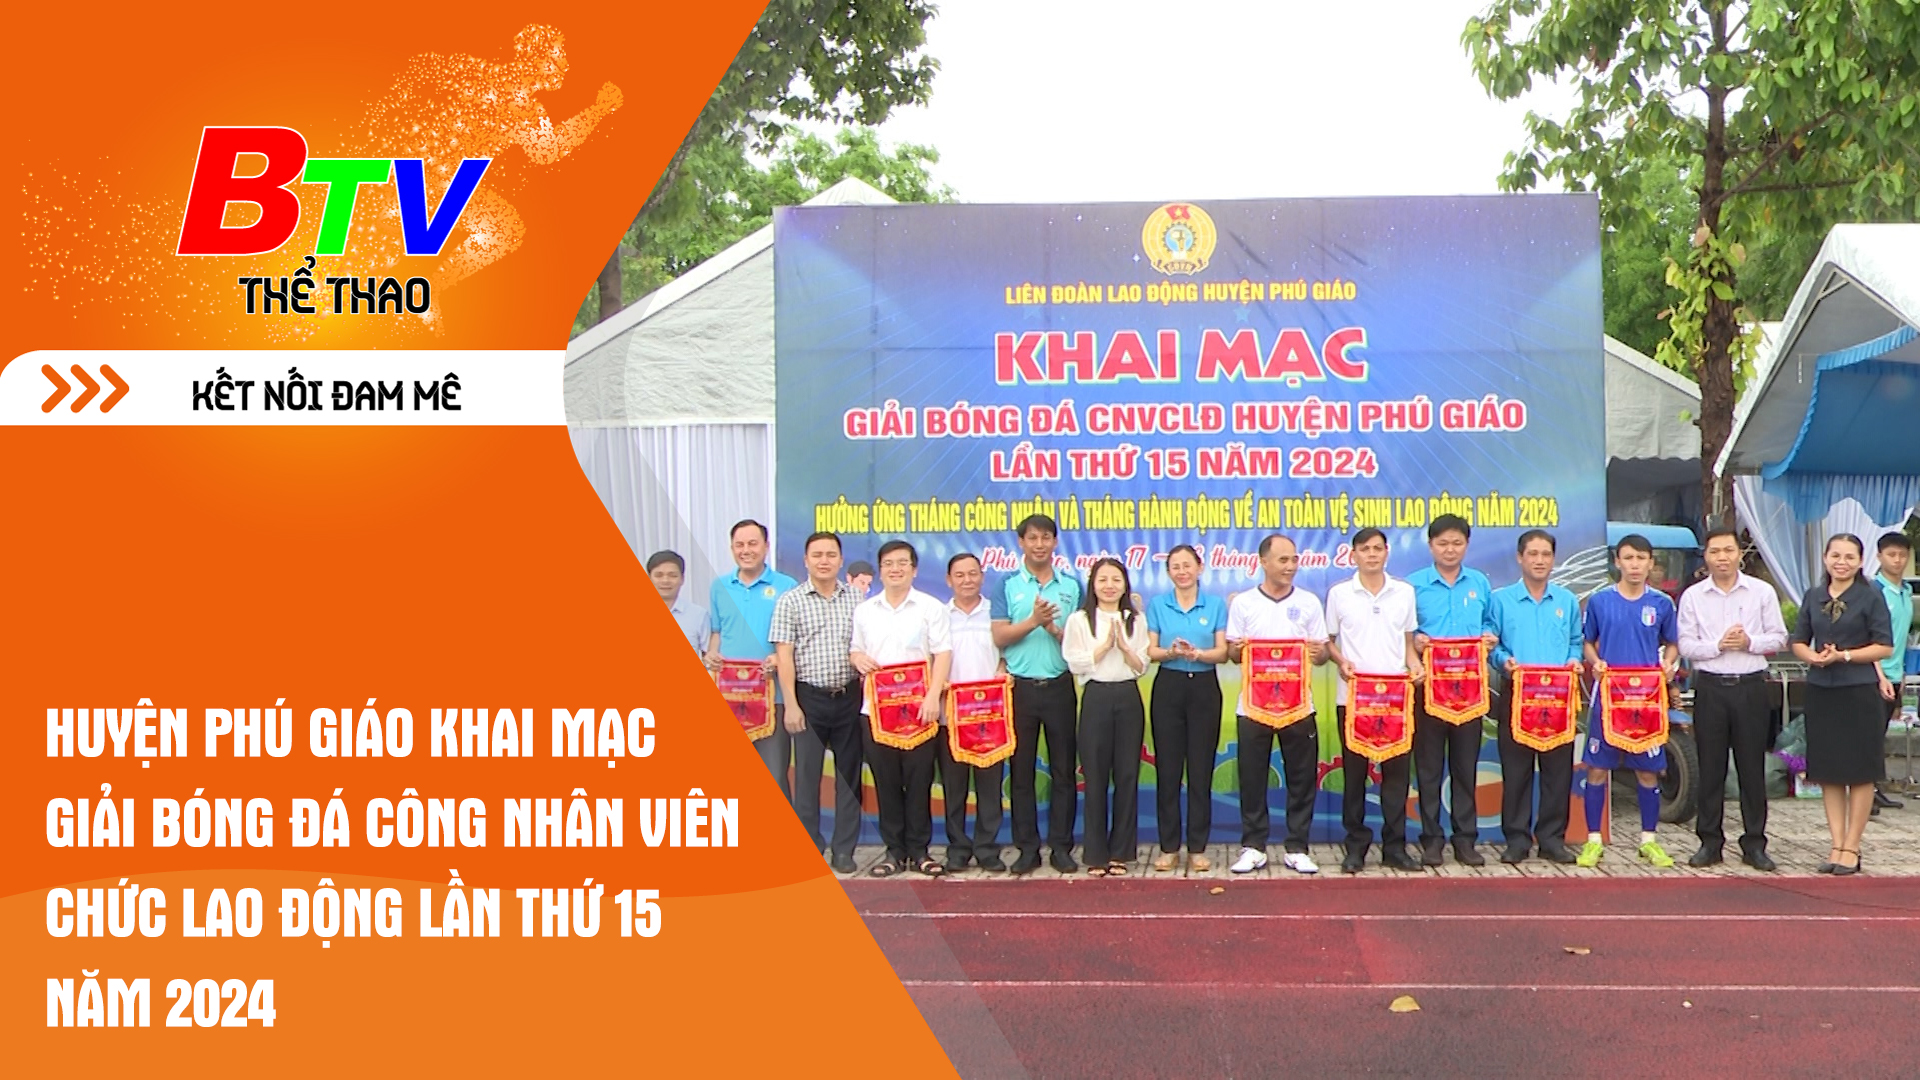 Huyện Phú Giáo khai mạc Giải bóng đá công nhân viên chức lao động lần thứ 15 năm 2024 | Tin Thể thao 24h	